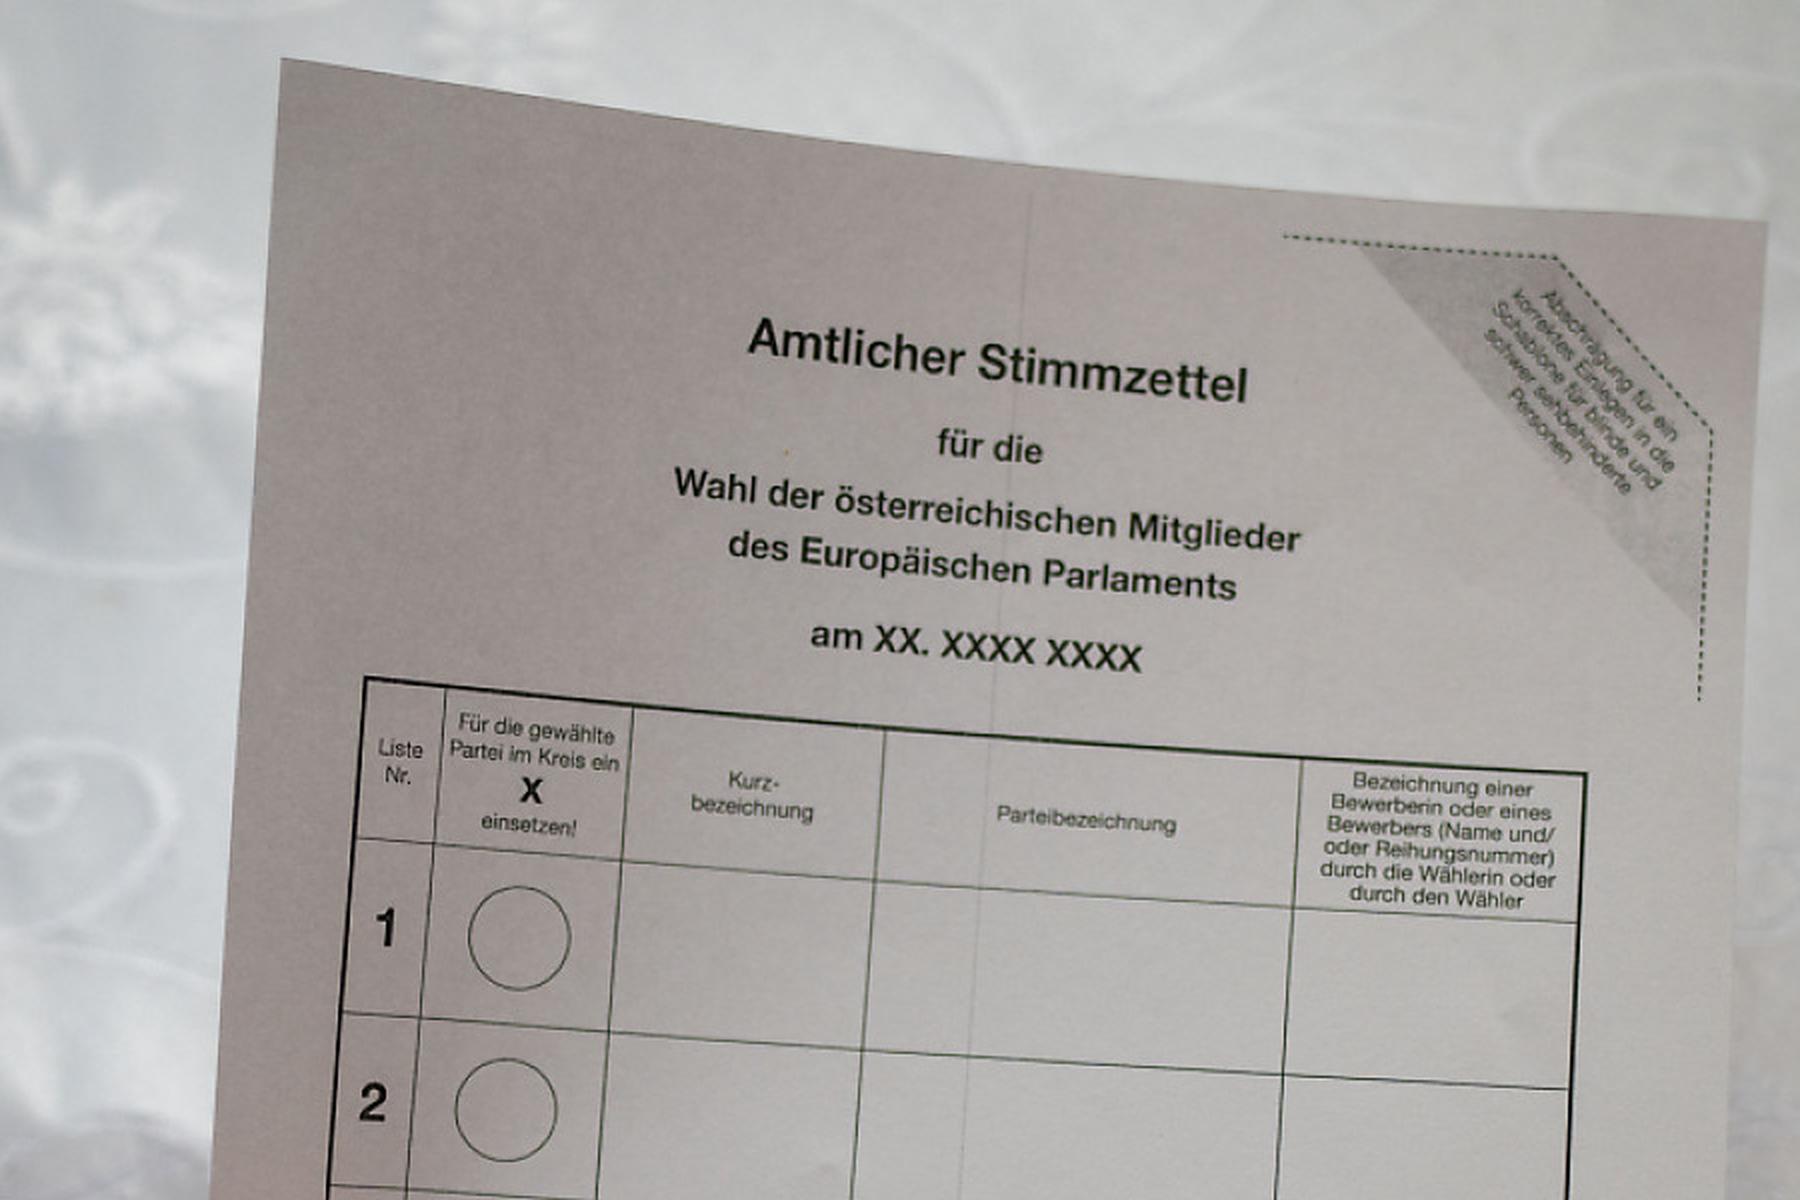 Wien: Rund 8 Millionen Stimmzettel werden für die EU-Wahl gedruckt